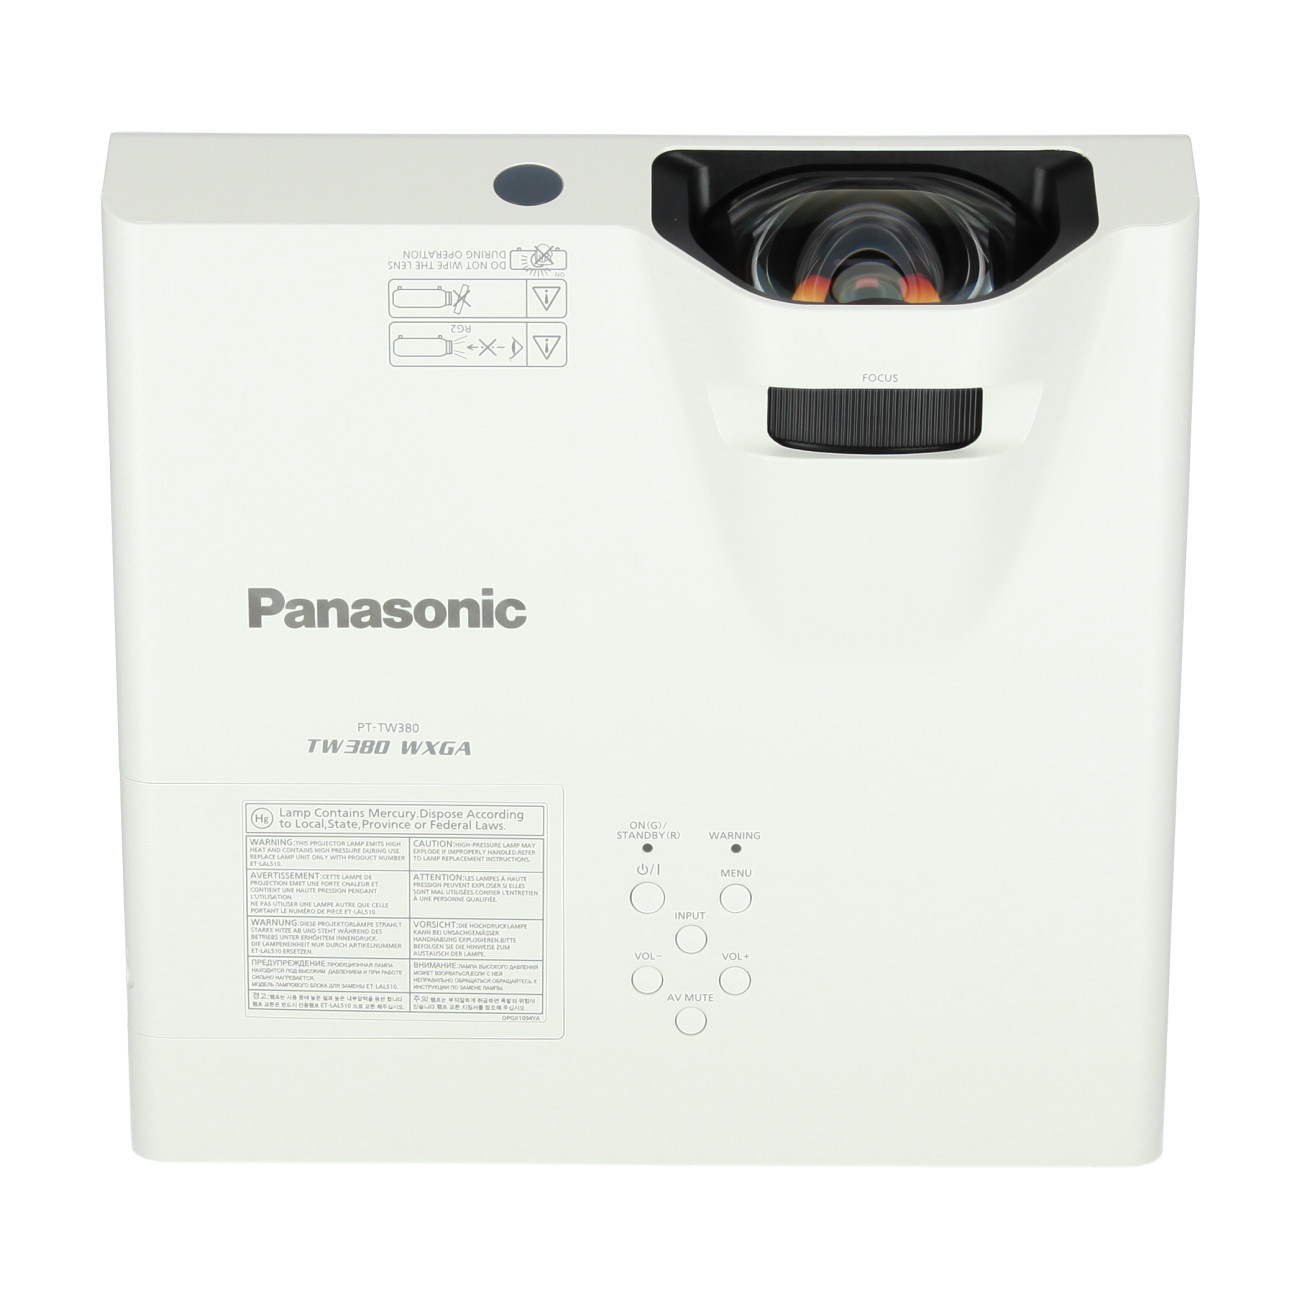 Vorschau: Panasonic PT-TW380 Kurzdistanzbeamer mit 3300 Lumen und WXGA Aufösung